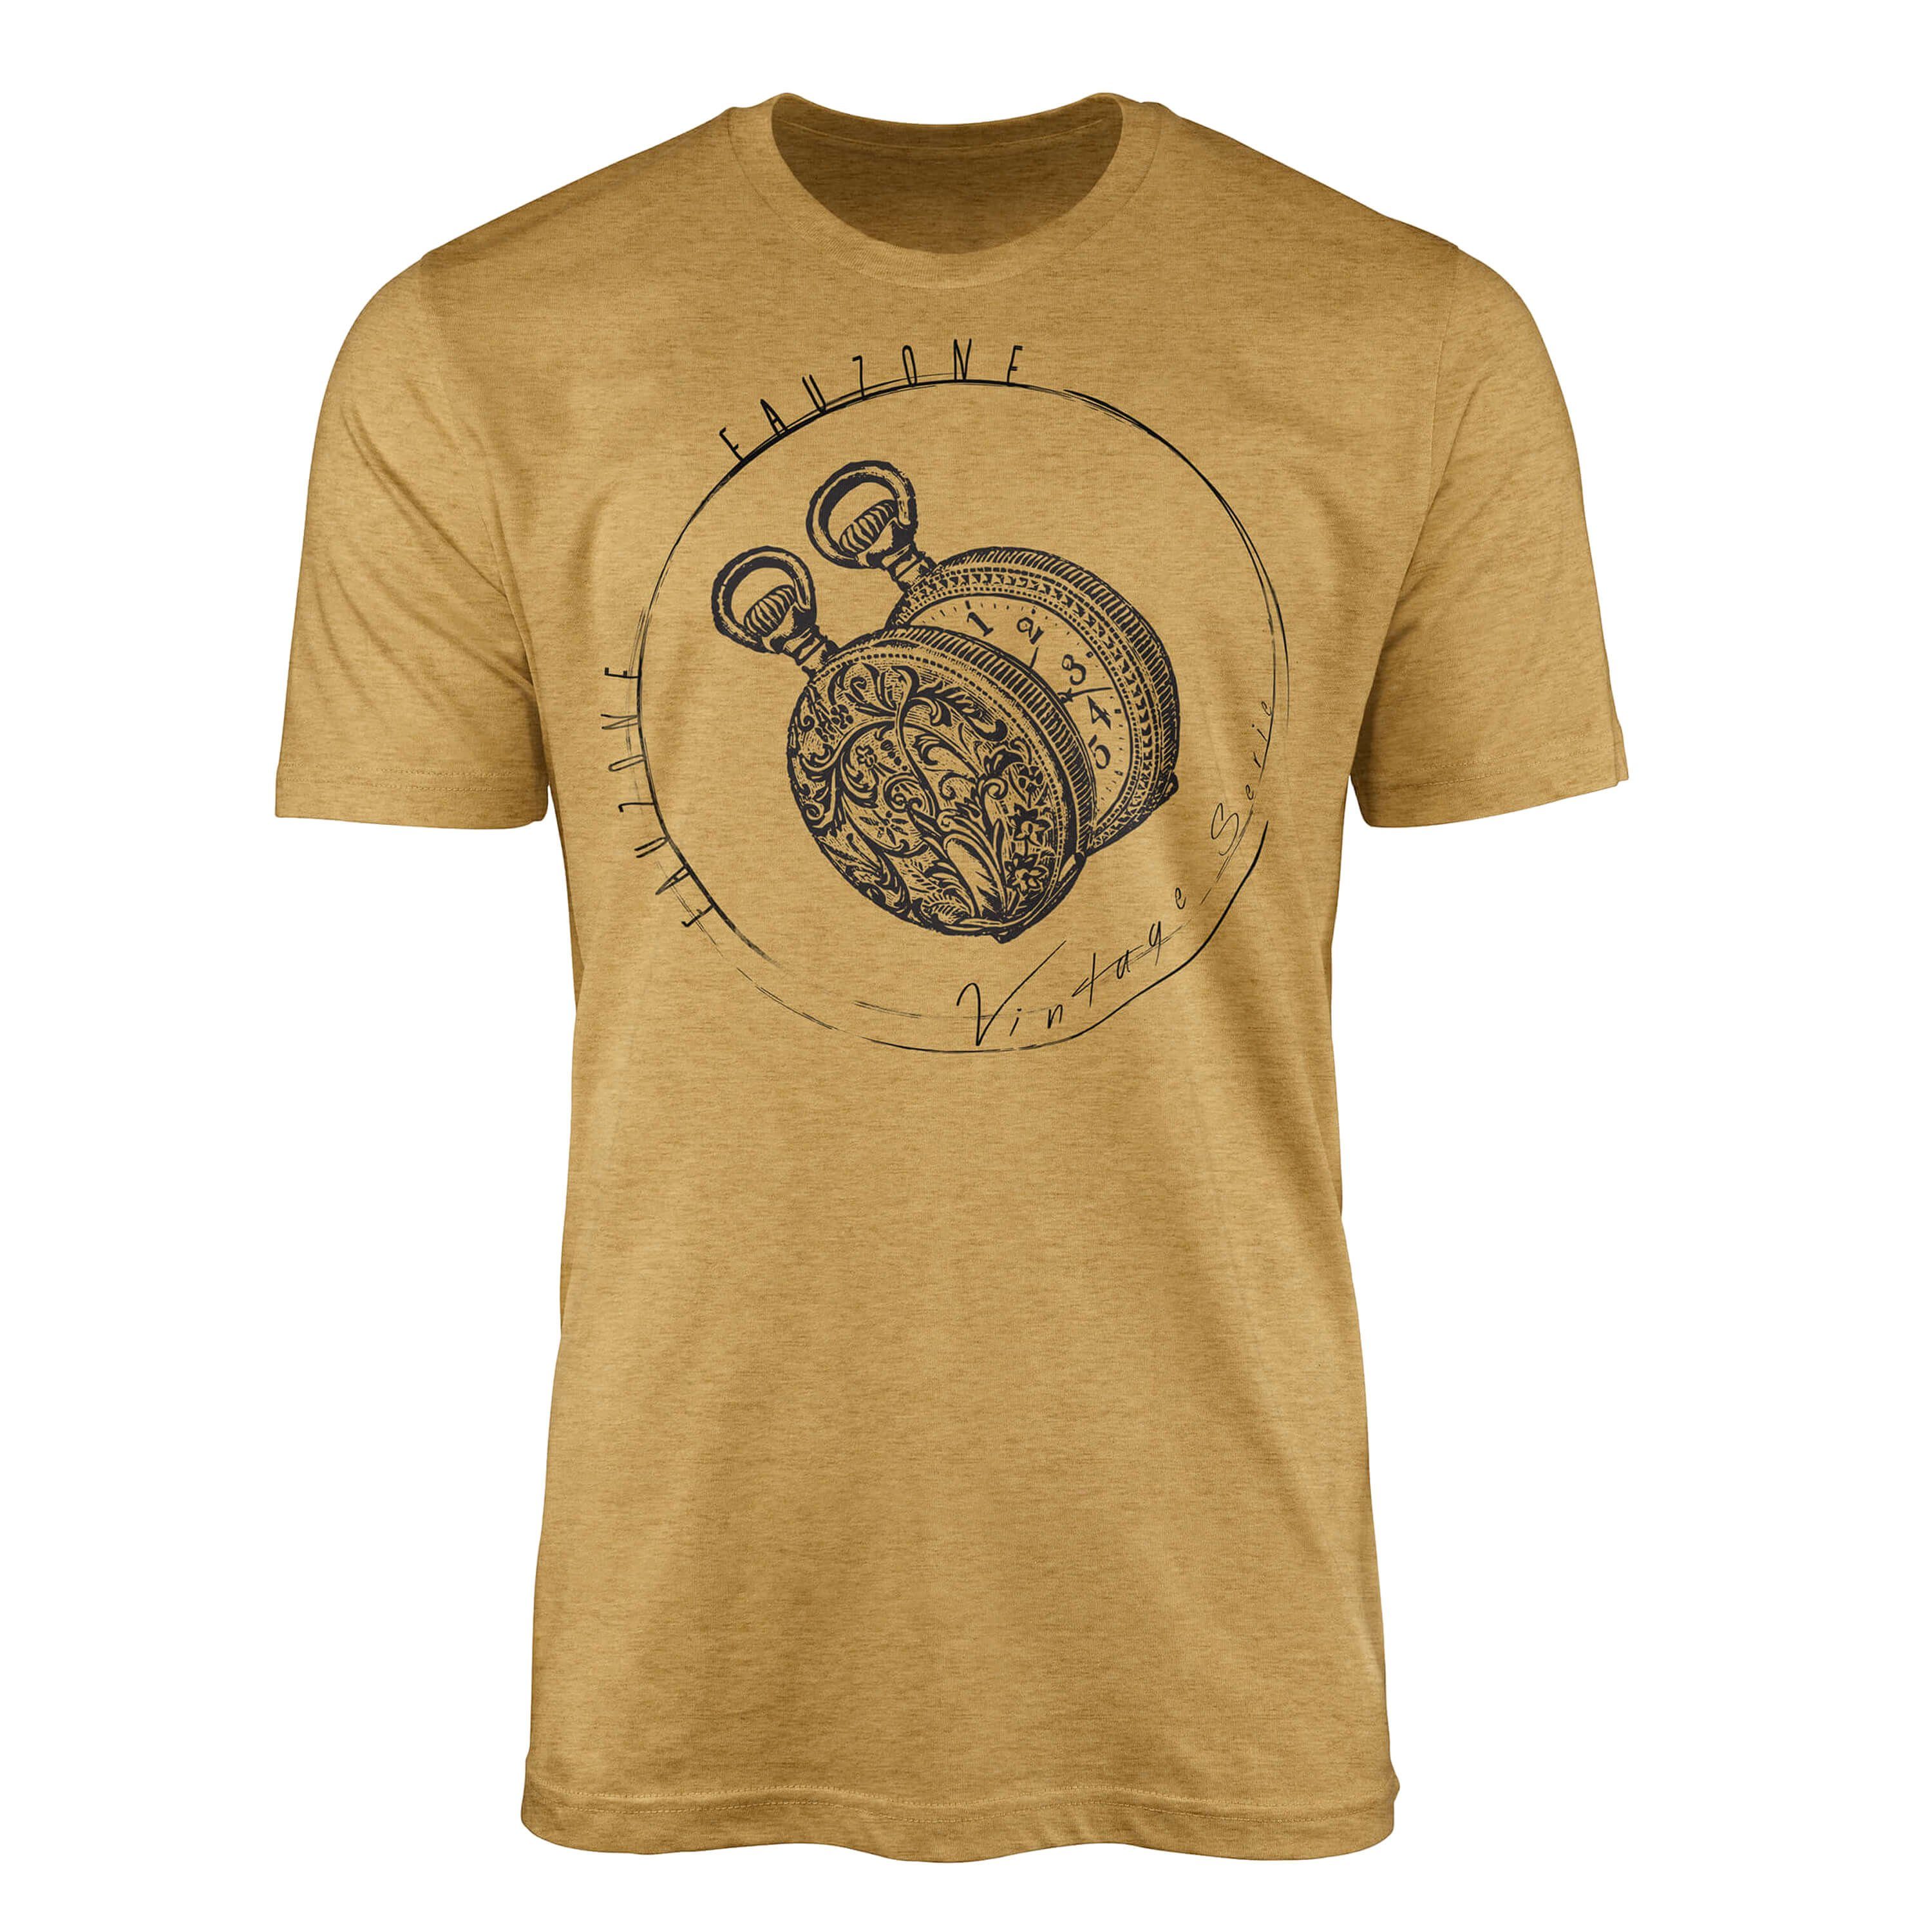 Sinus Art T-Shirt Vintage Herren T-Shirt Taschenuhr Antique Gold